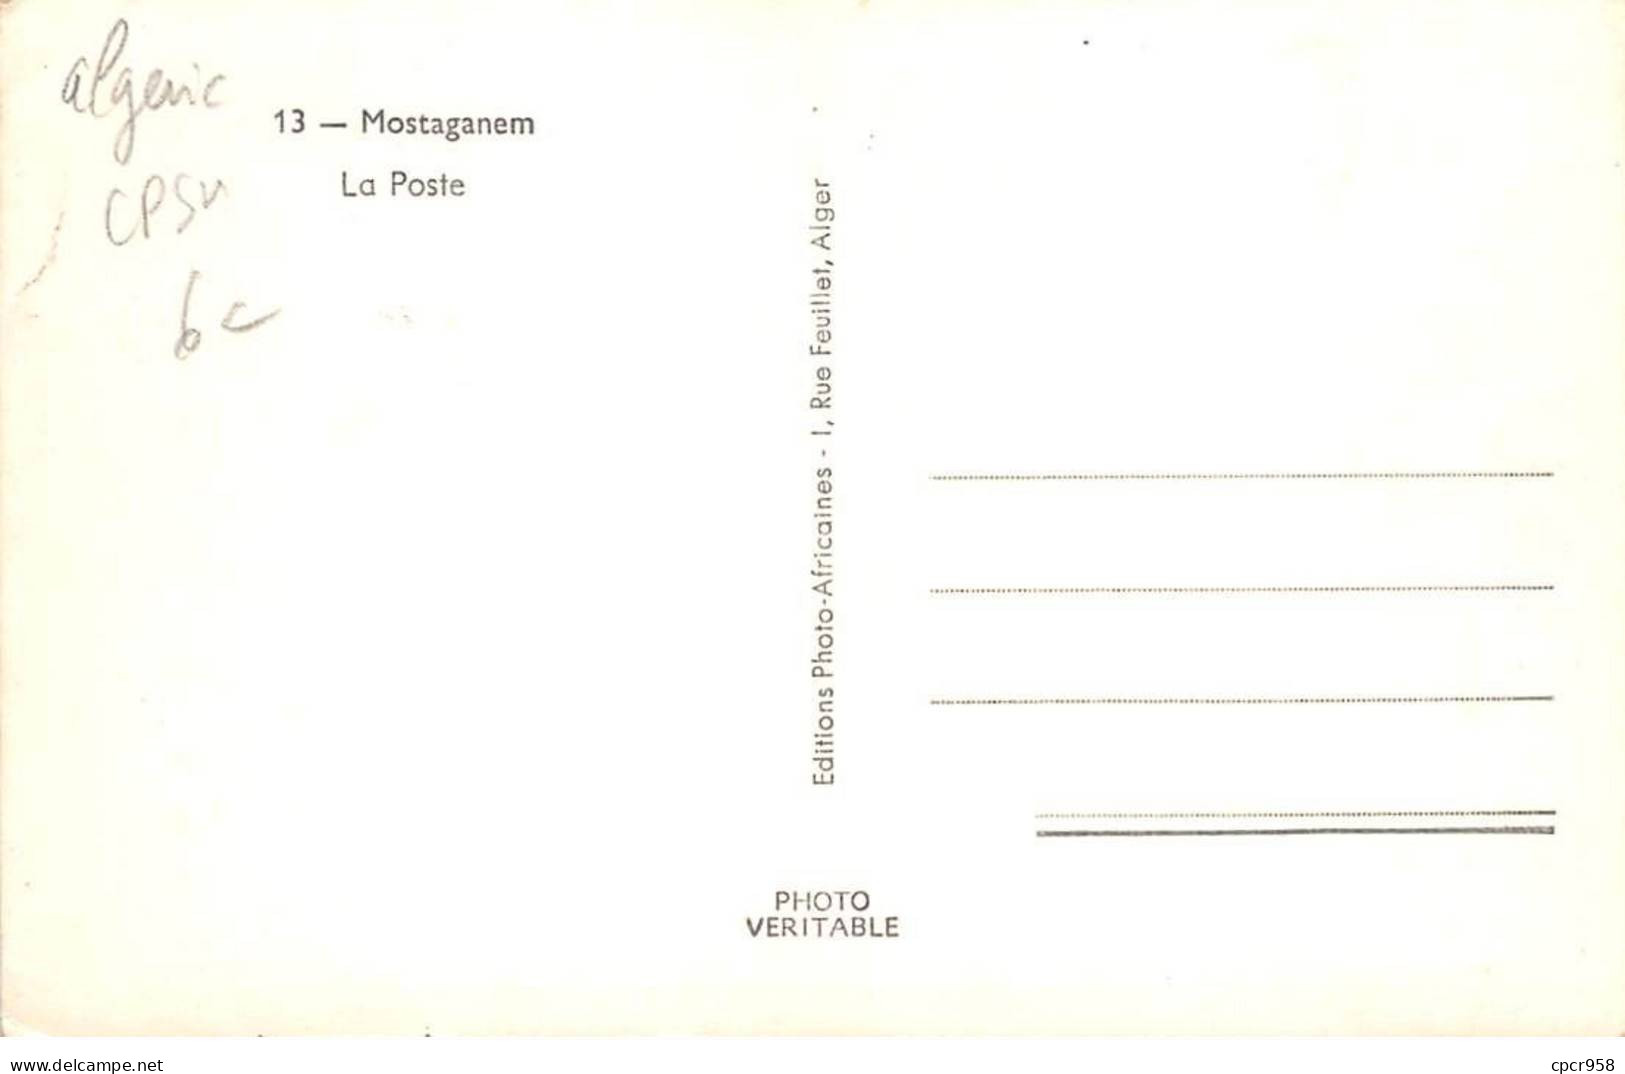 ALGERIE - MOSTAGANEM - SAN27066 - La Poste - CPSM - Mostaganem